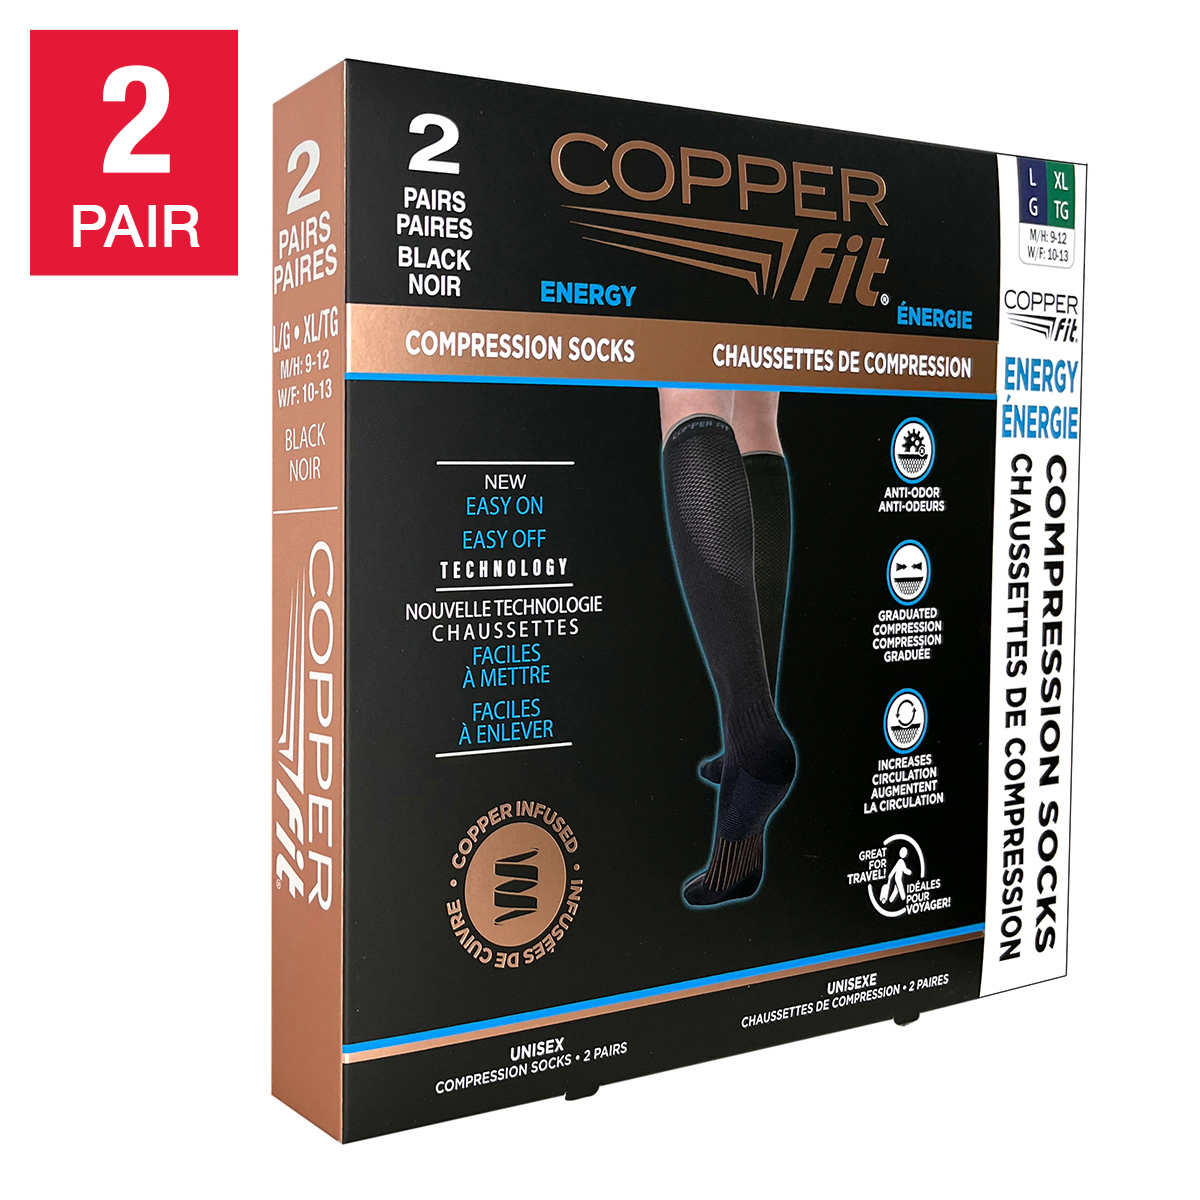  Copper Fit unisex adult 1 Pair Socks, Black, Large-X